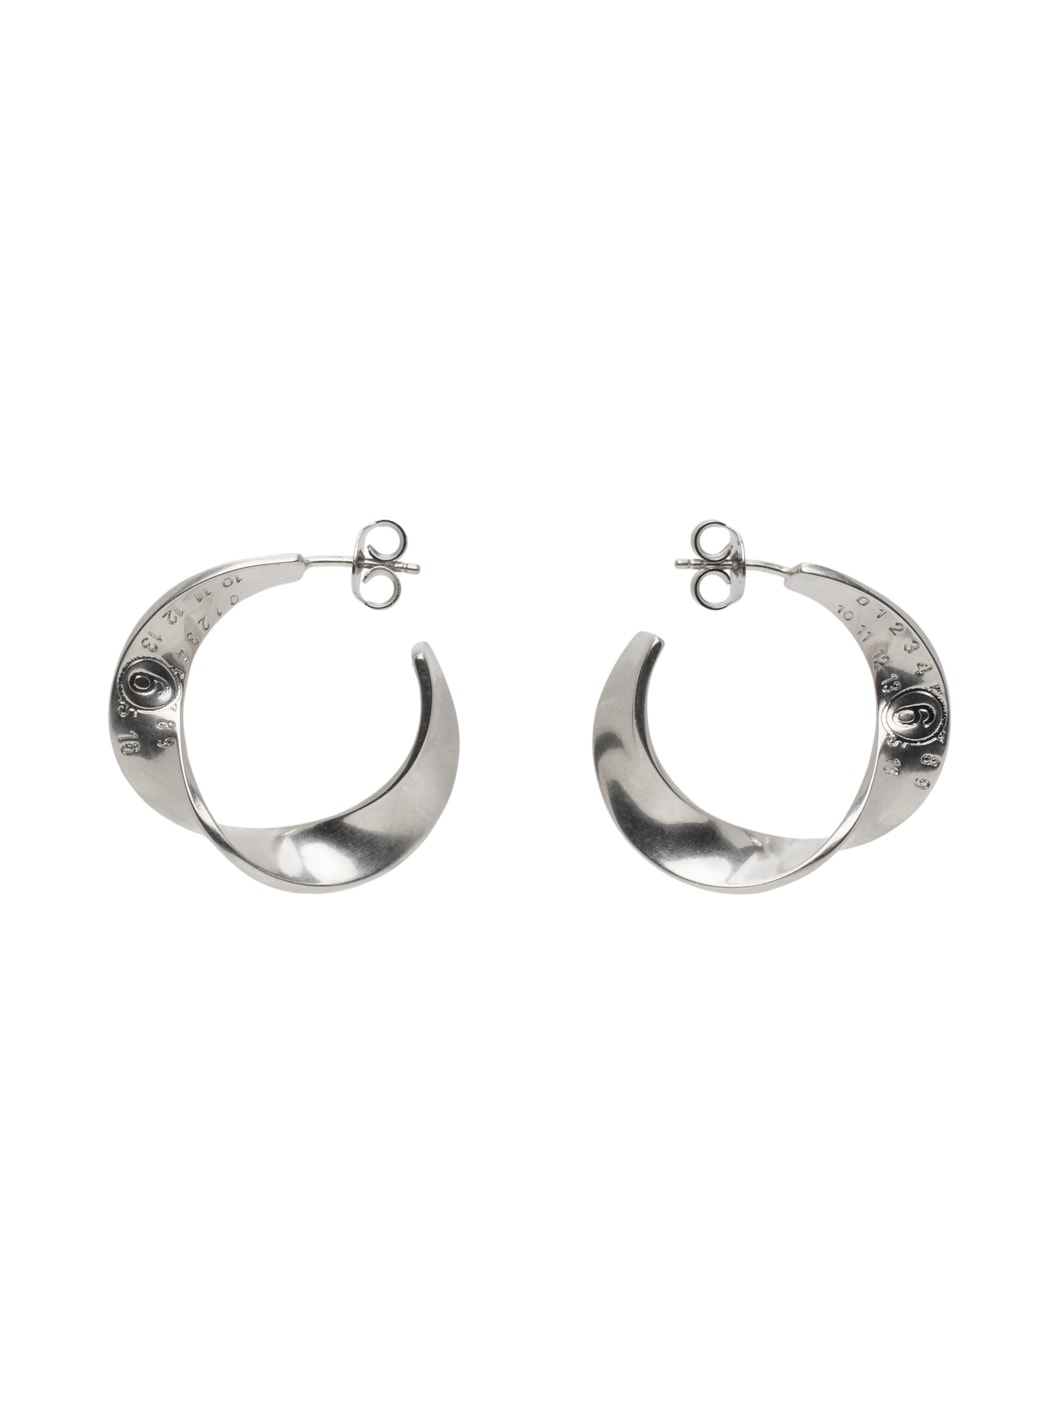 Silver Twisted Hoop Earrings - 1